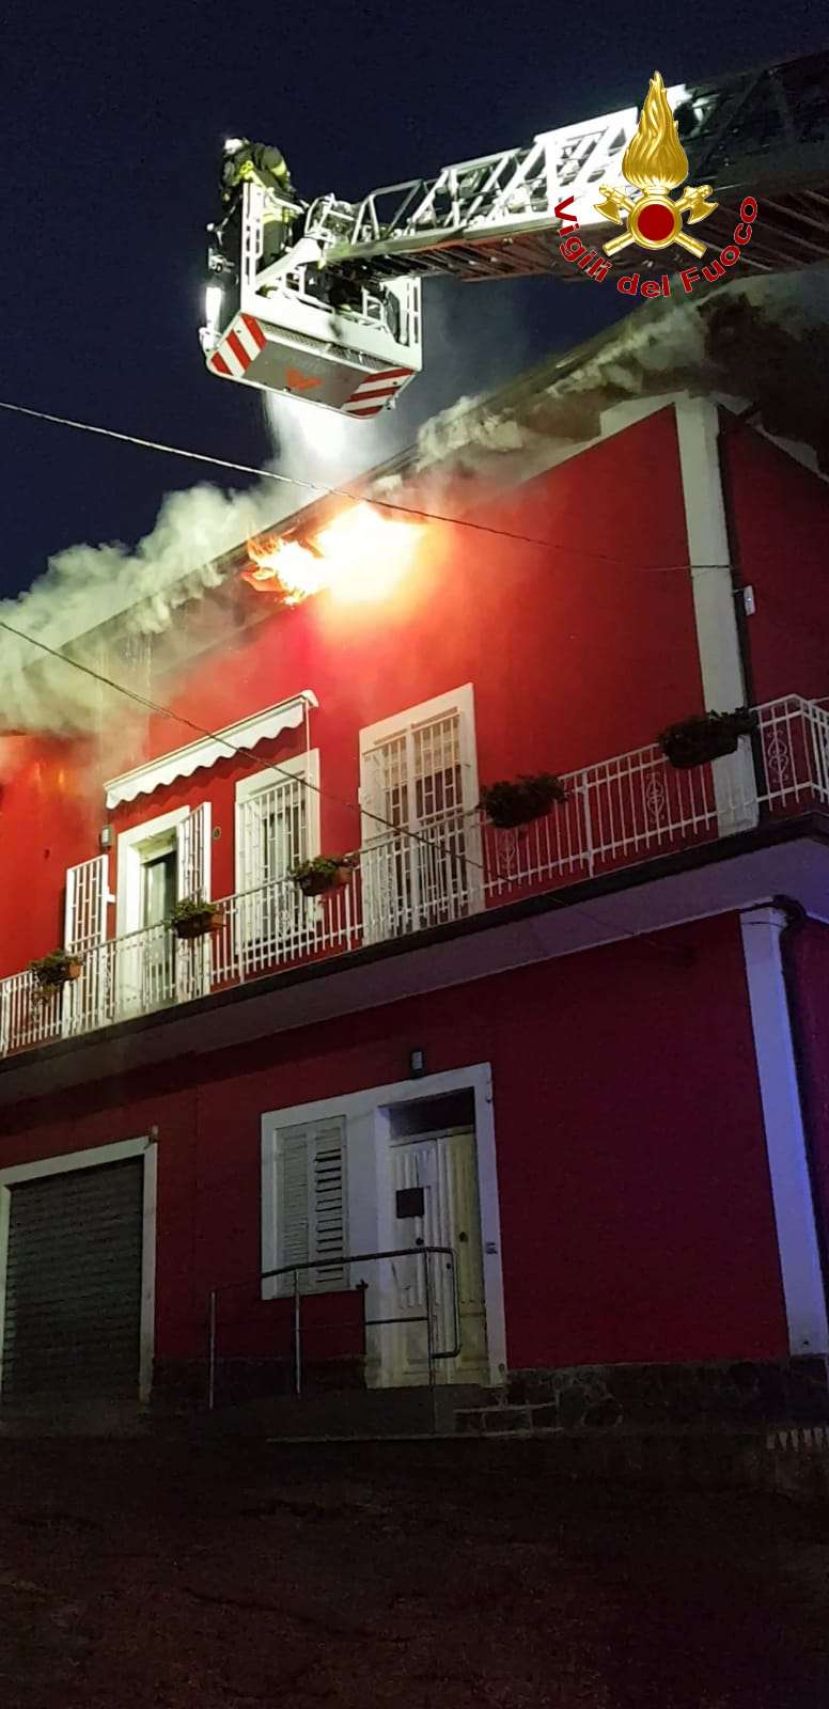 Casa e auto a fuoco nel Vibonese, intervengono i Vigili del fuoco